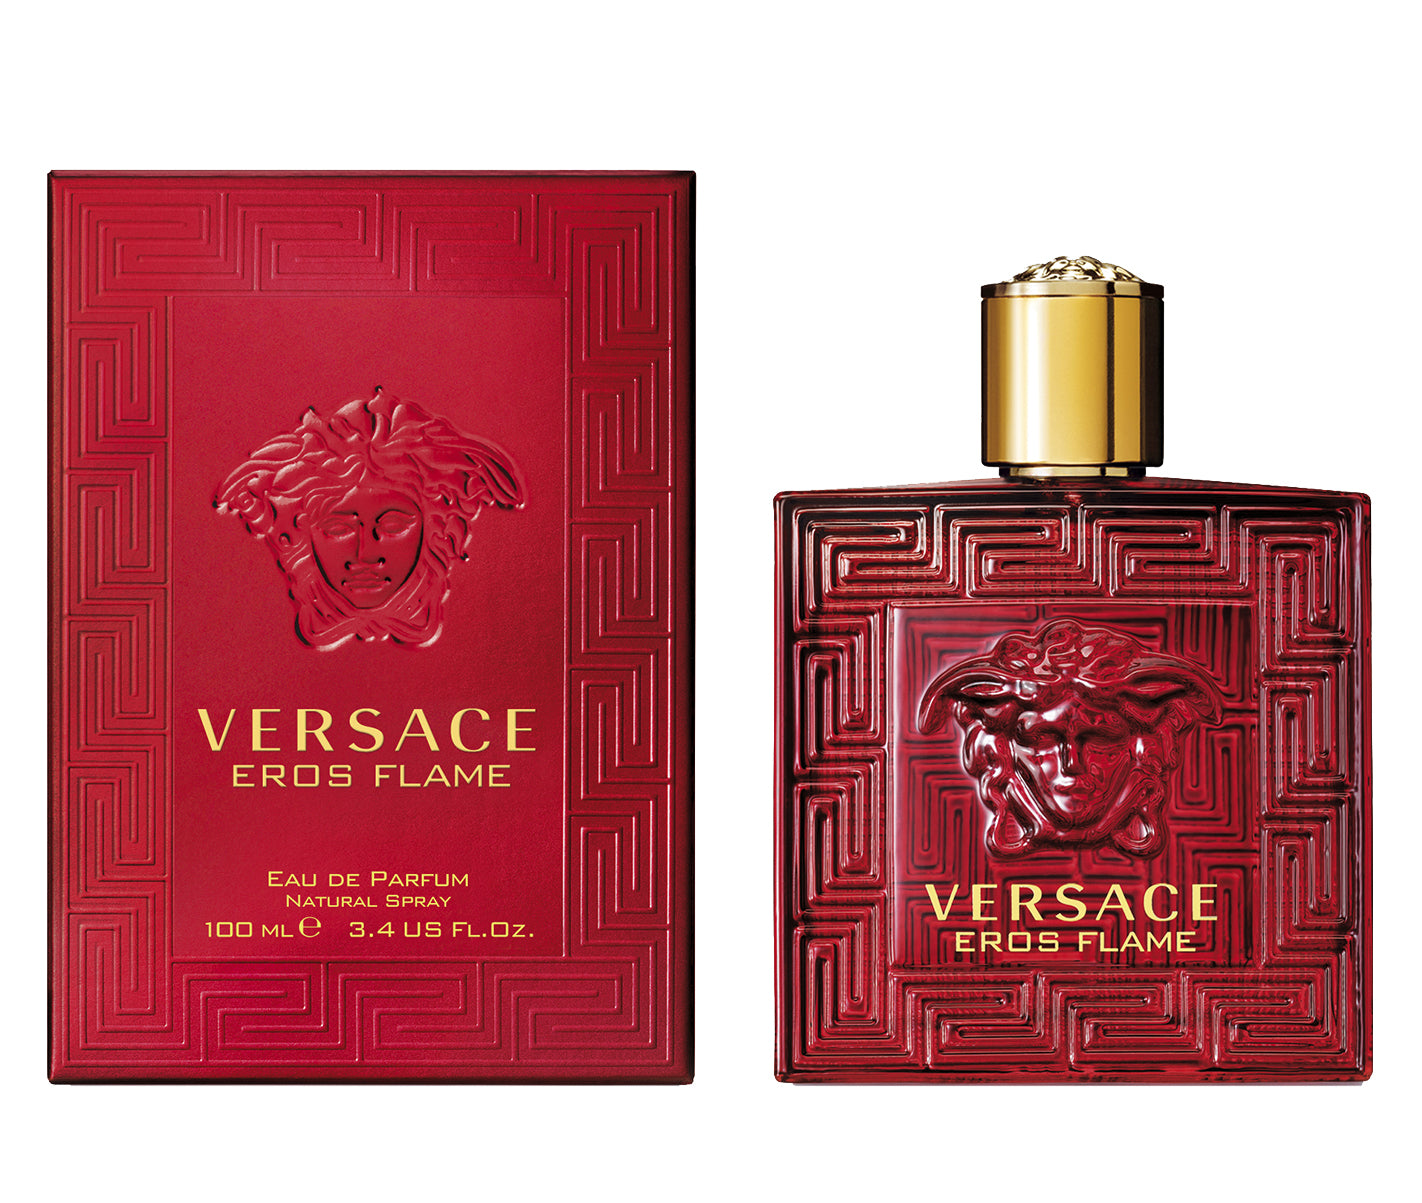 Versace Eros Flame Eau De Parfum 100 ml - RossoLaccaStore